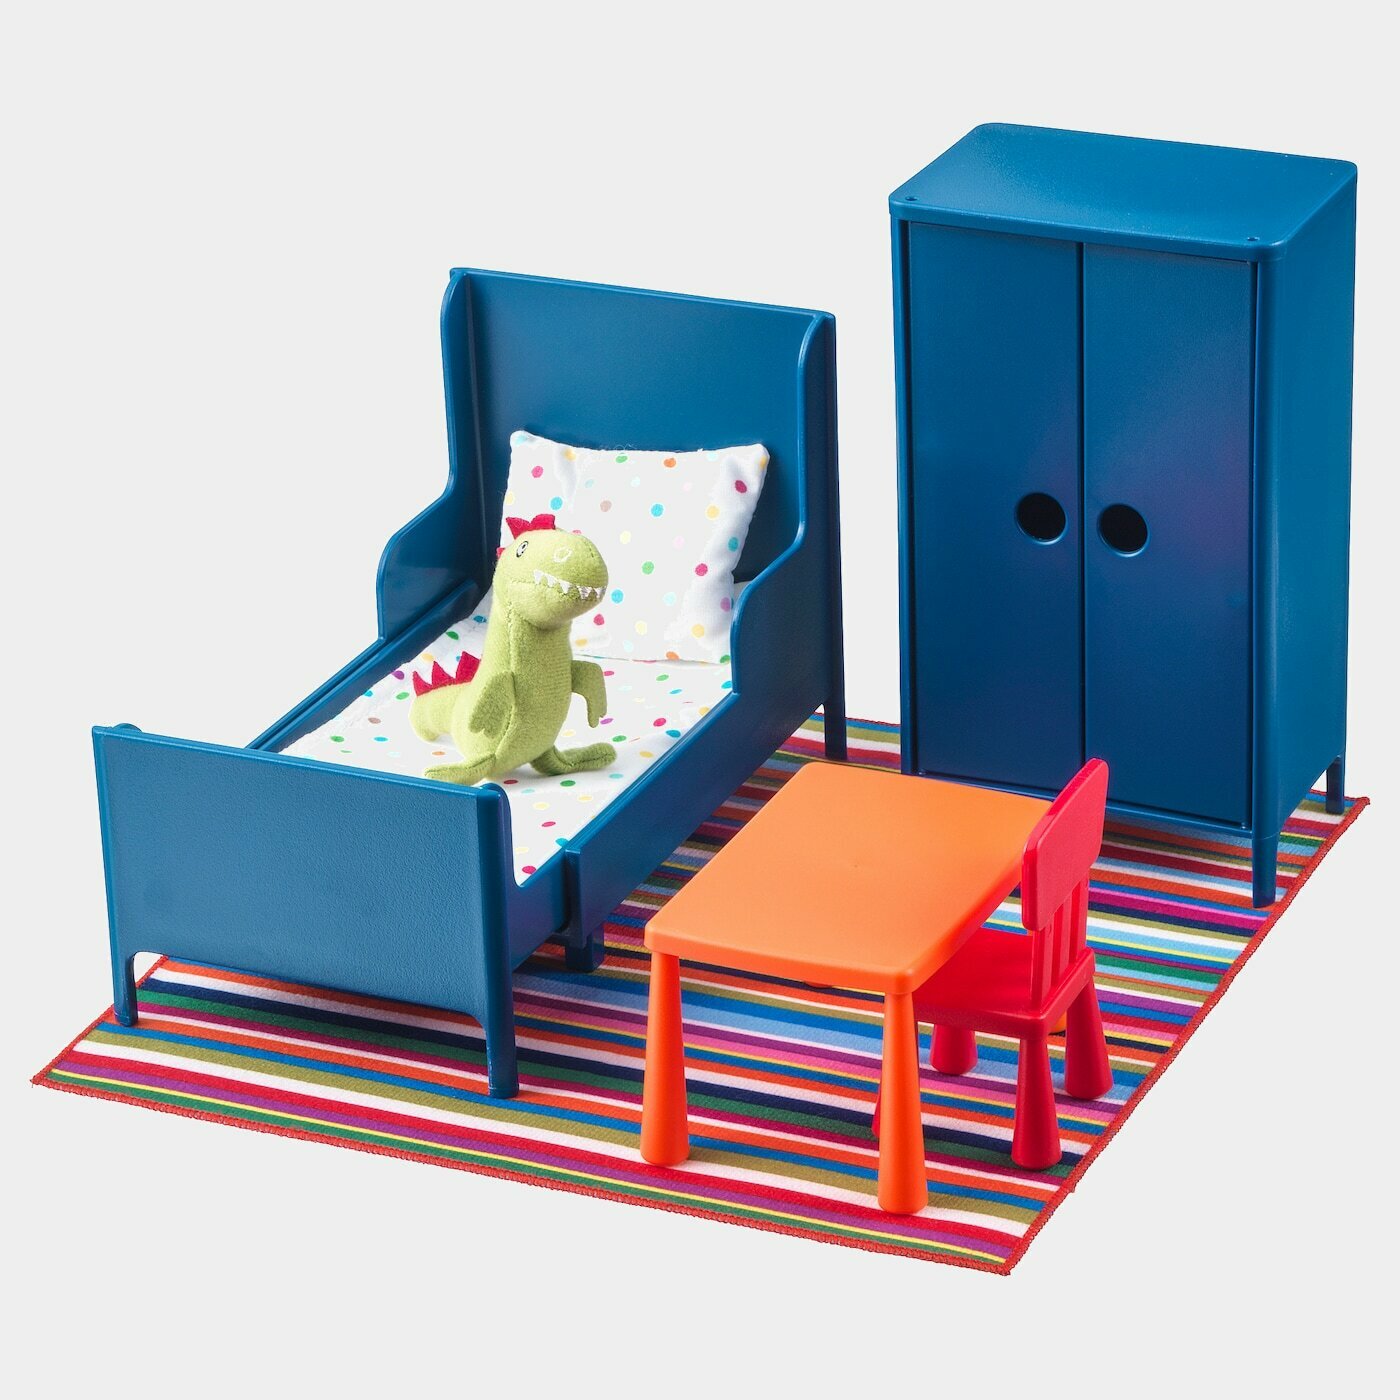 HUSET Puppenmöbel, Schlafzimmer  - Spielzeug - Babyausstattung & Kinderzimmerzubehör Ideen für dein Zuhause von Home Trends. Babyausstattung & Kinderzimmerzubehör Trends von Social Media Influencer für dein Skandi Zuhause.